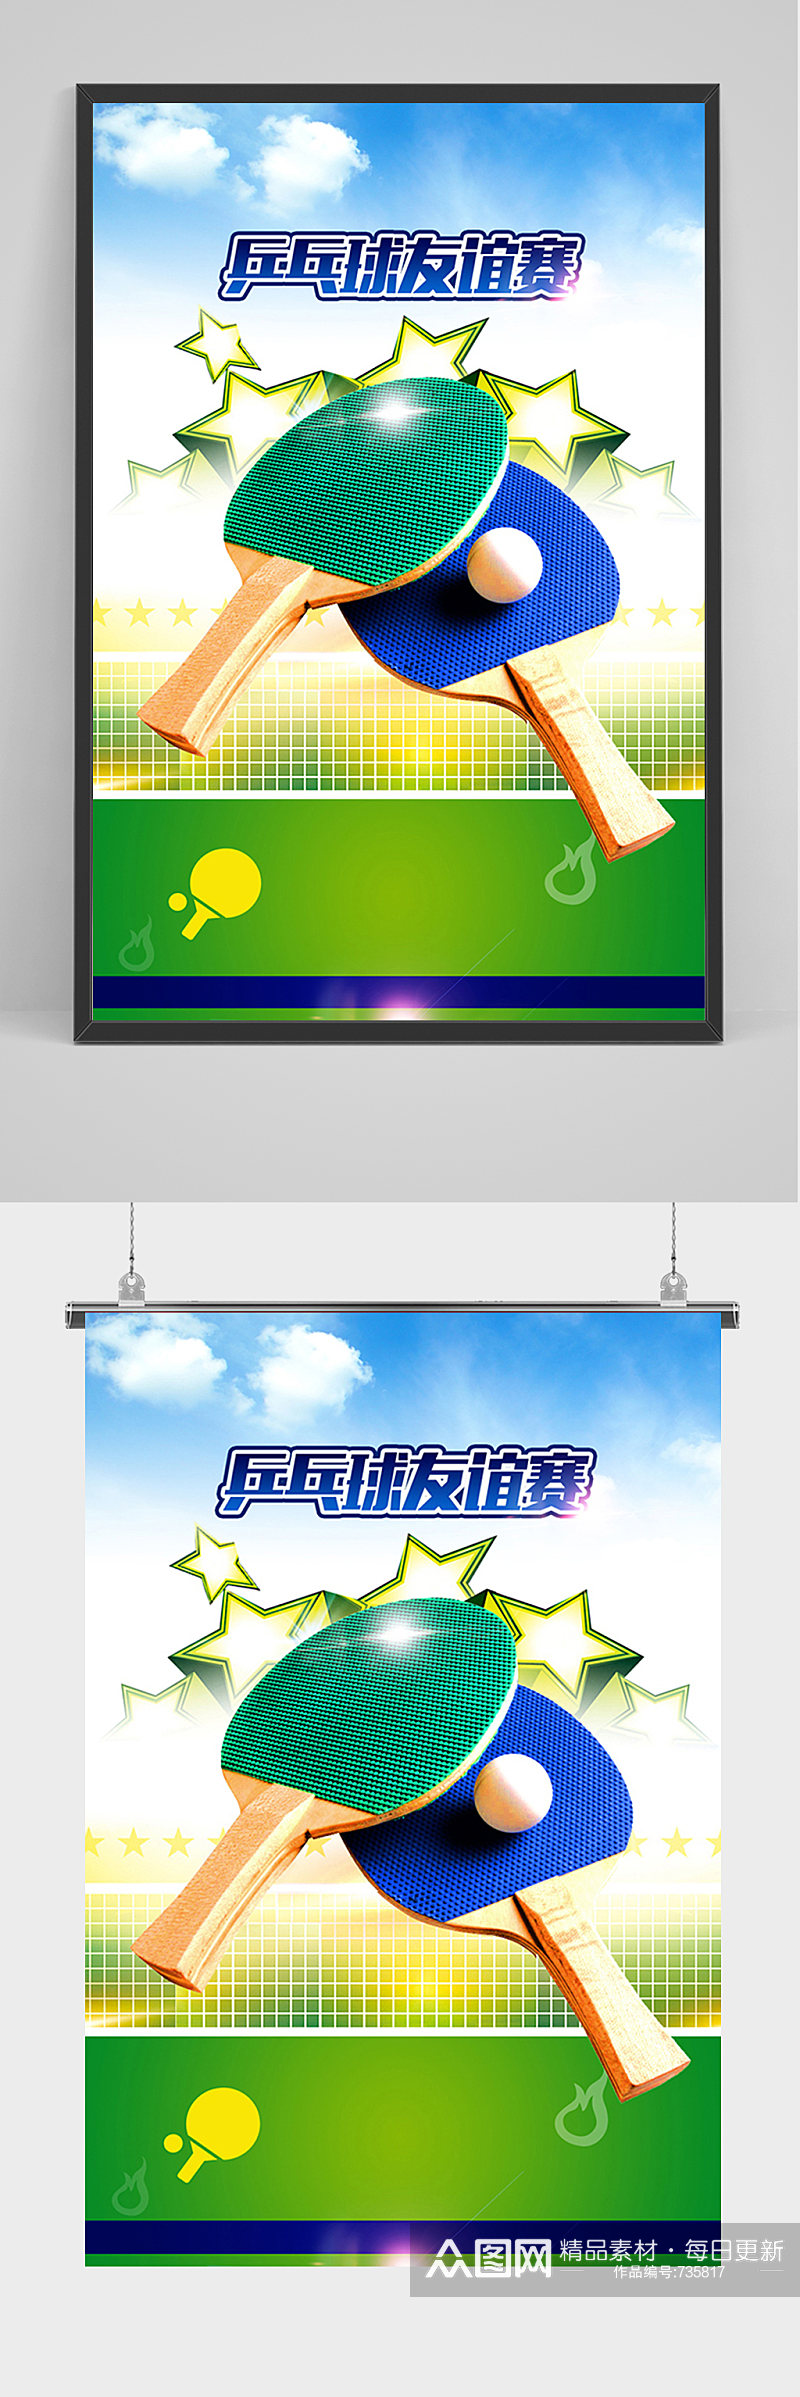 简约清新乒乓球友谊赛海报素材